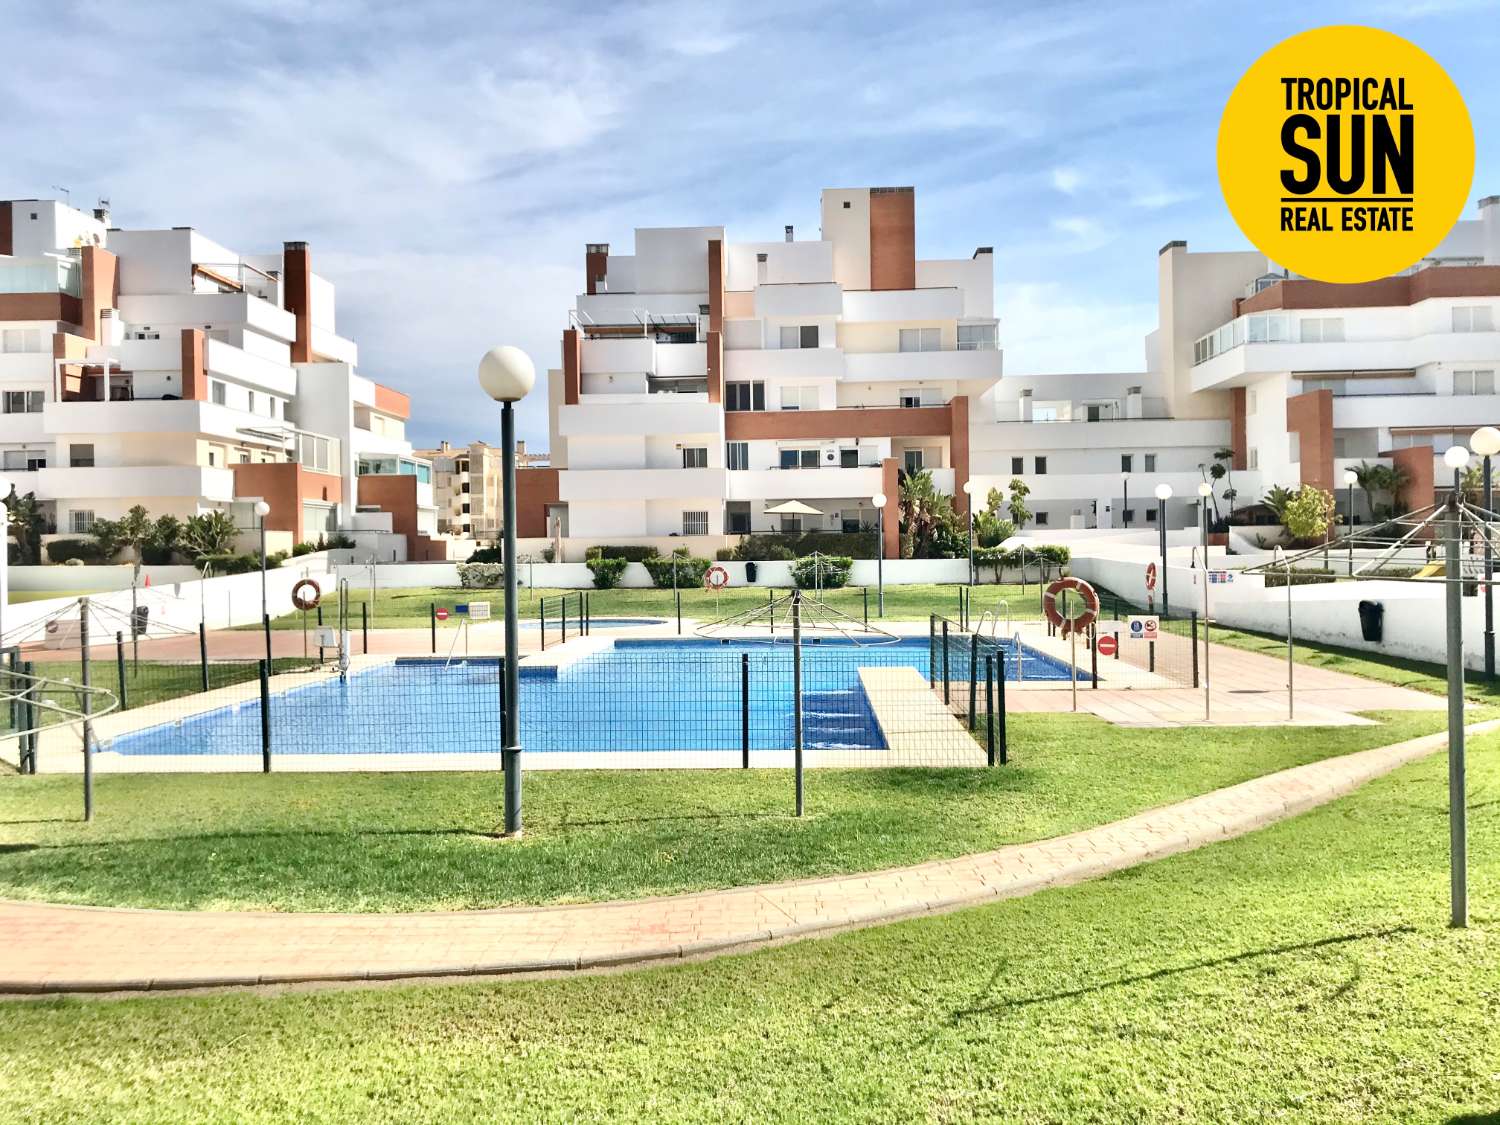 Scopri il paradiso a Roquetas de Mar: bella casa con 3 camere da letto nella zona residenziale di Aguaserena